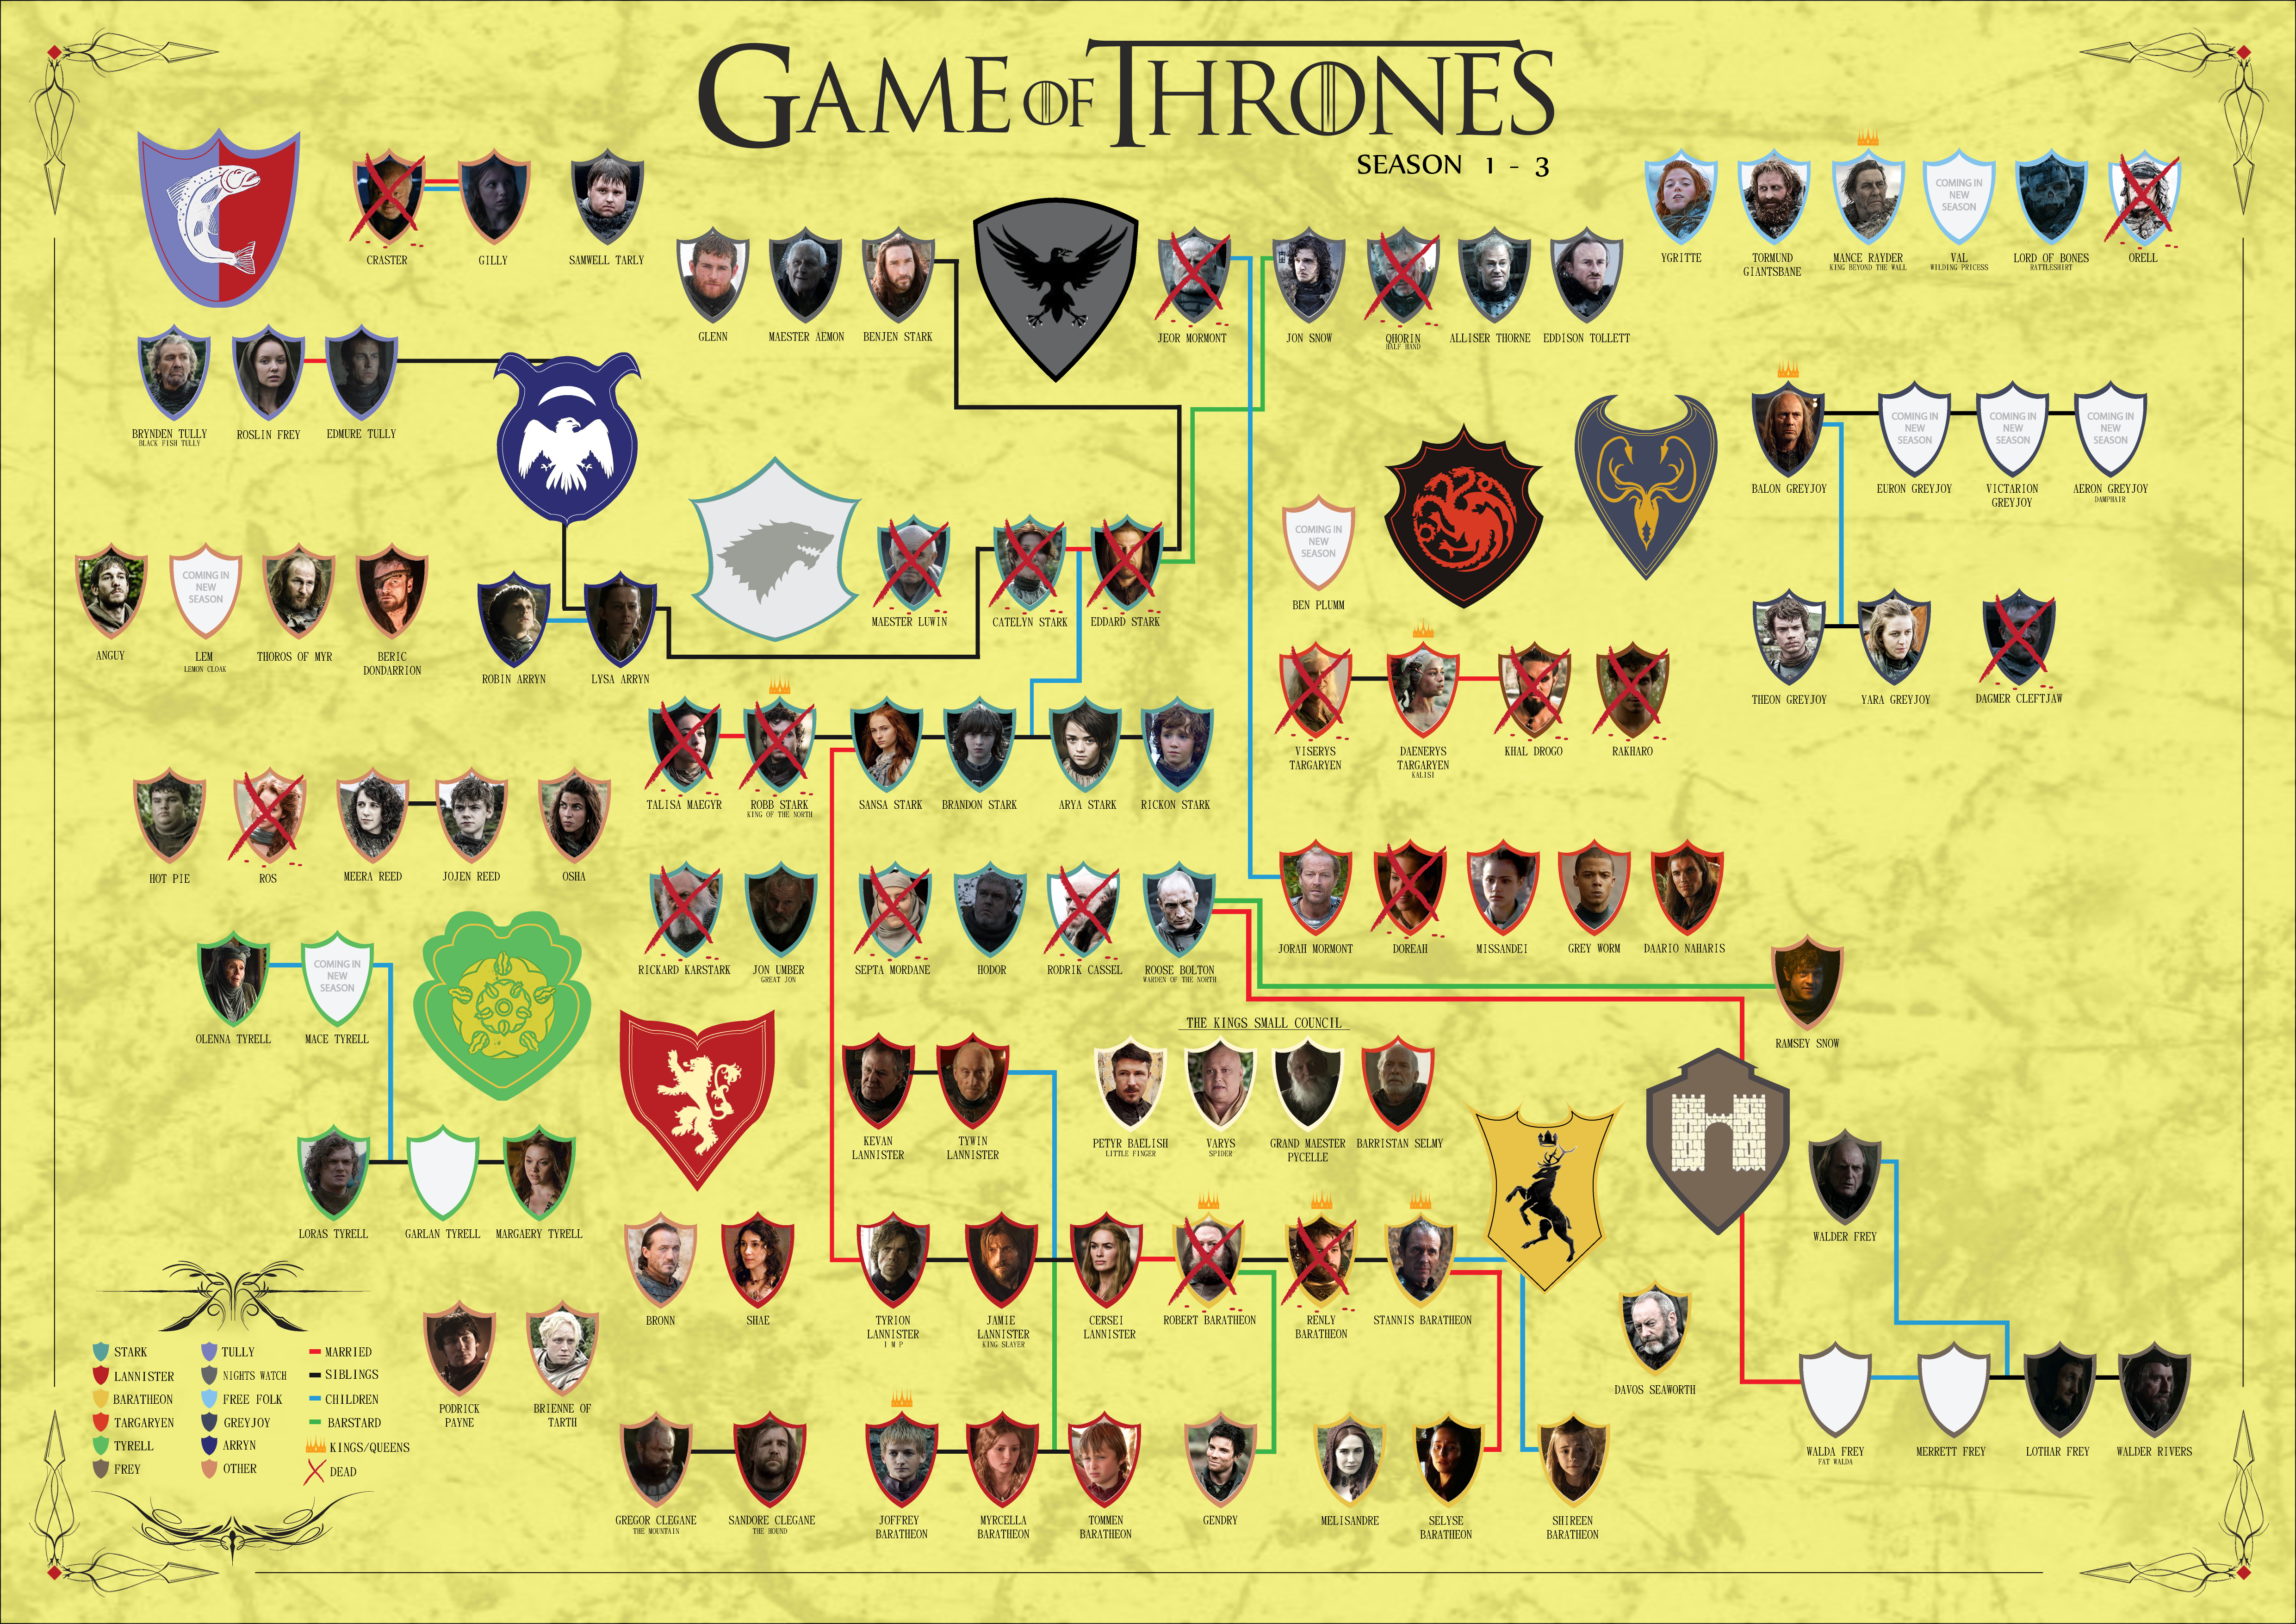 Game Of Thrones Gilly Game Of Thrones Samwell Tarly Grenn Game Of Thrones Aemon Targaryen Benjen Sta 4962x3510